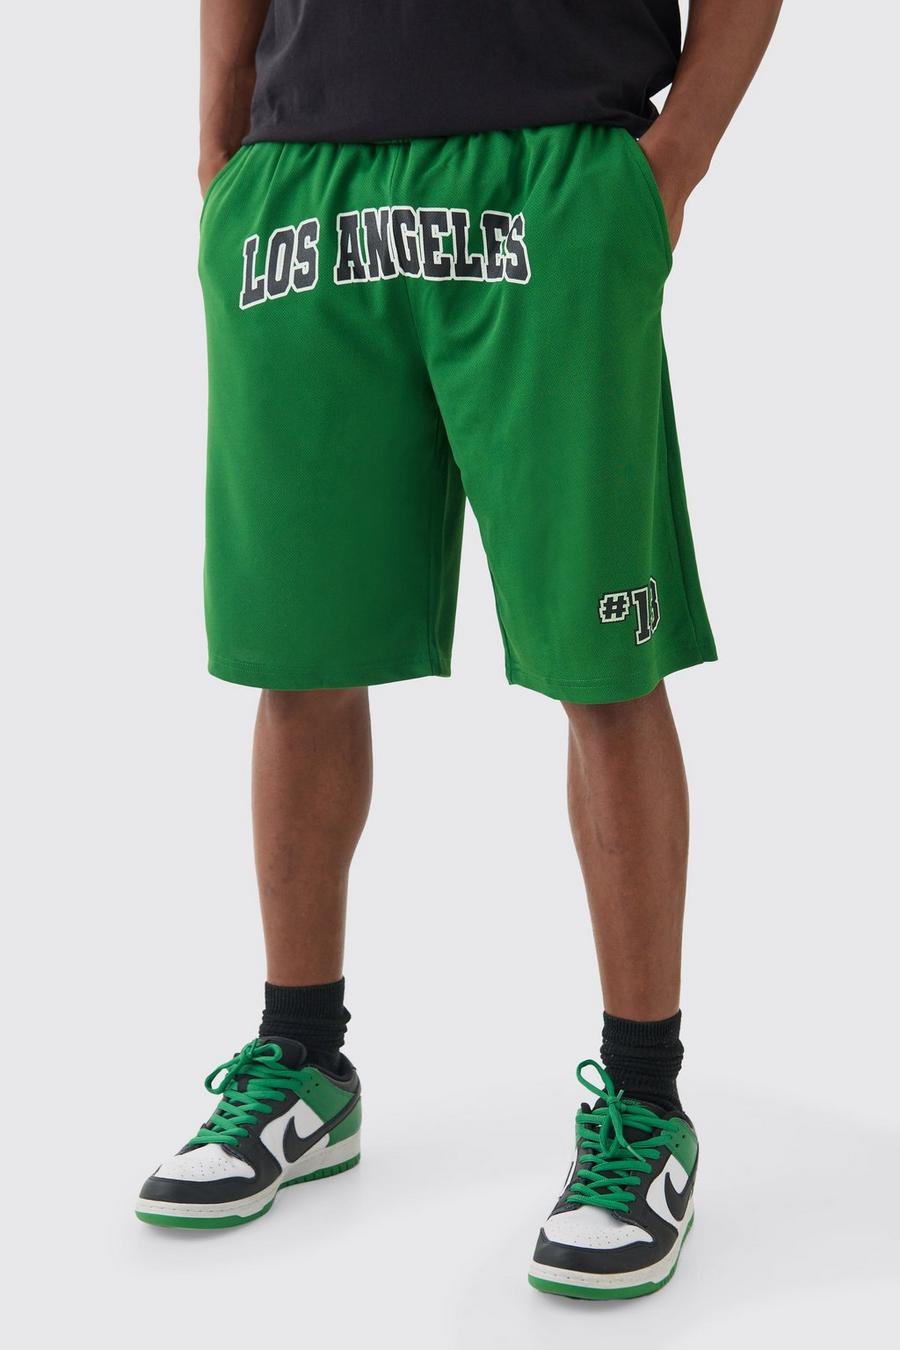 Pantalón corto largo de baloncesto con estampado Los Angeles, Green